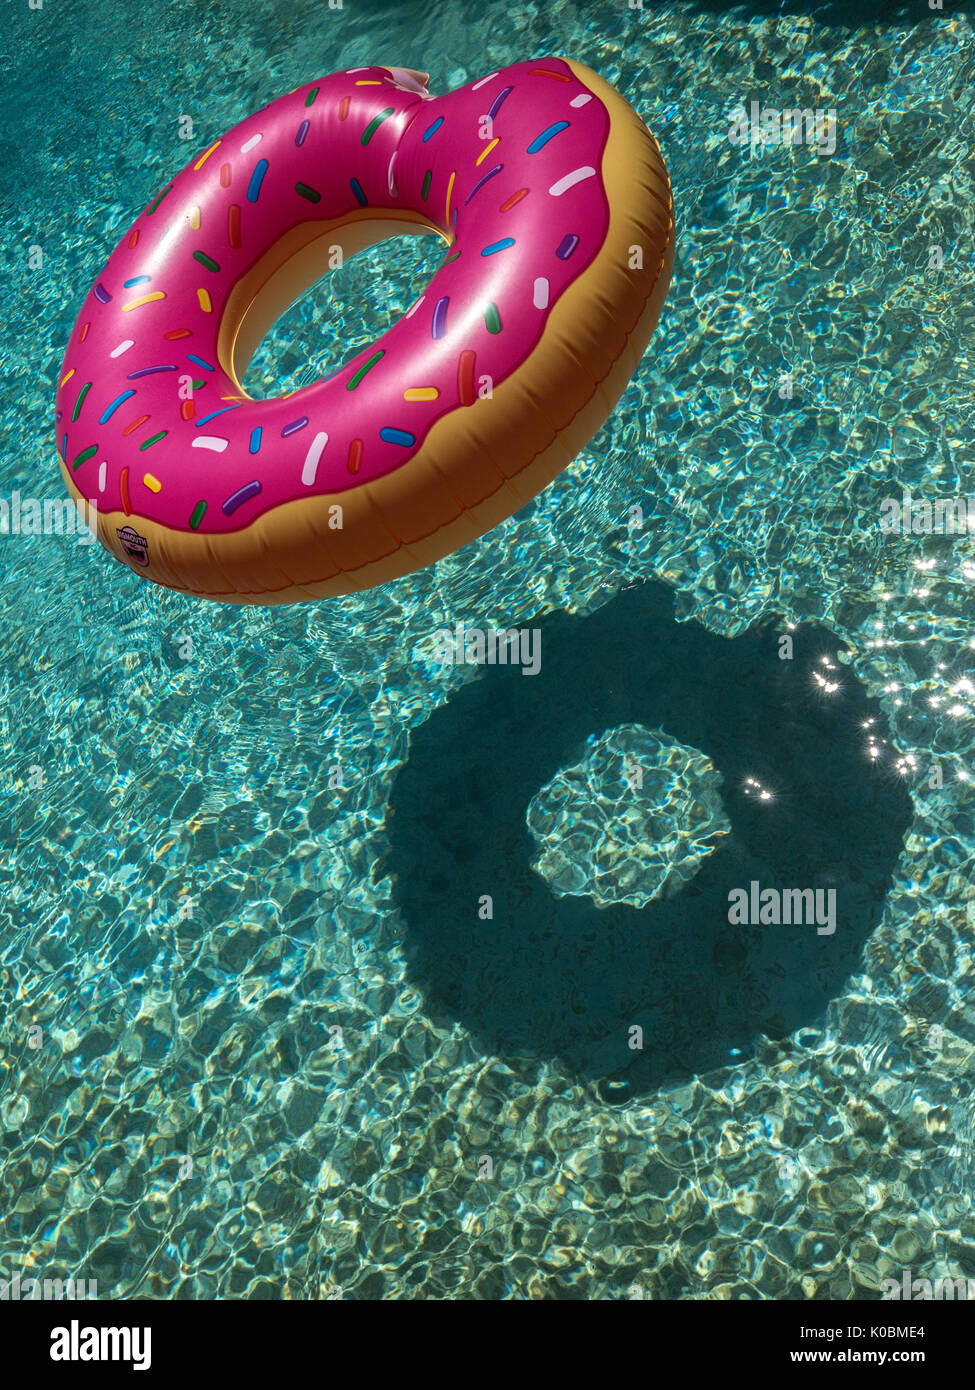 Bunte pool float geformt wie ein gebissen Donut Stockfotografie - Alamy